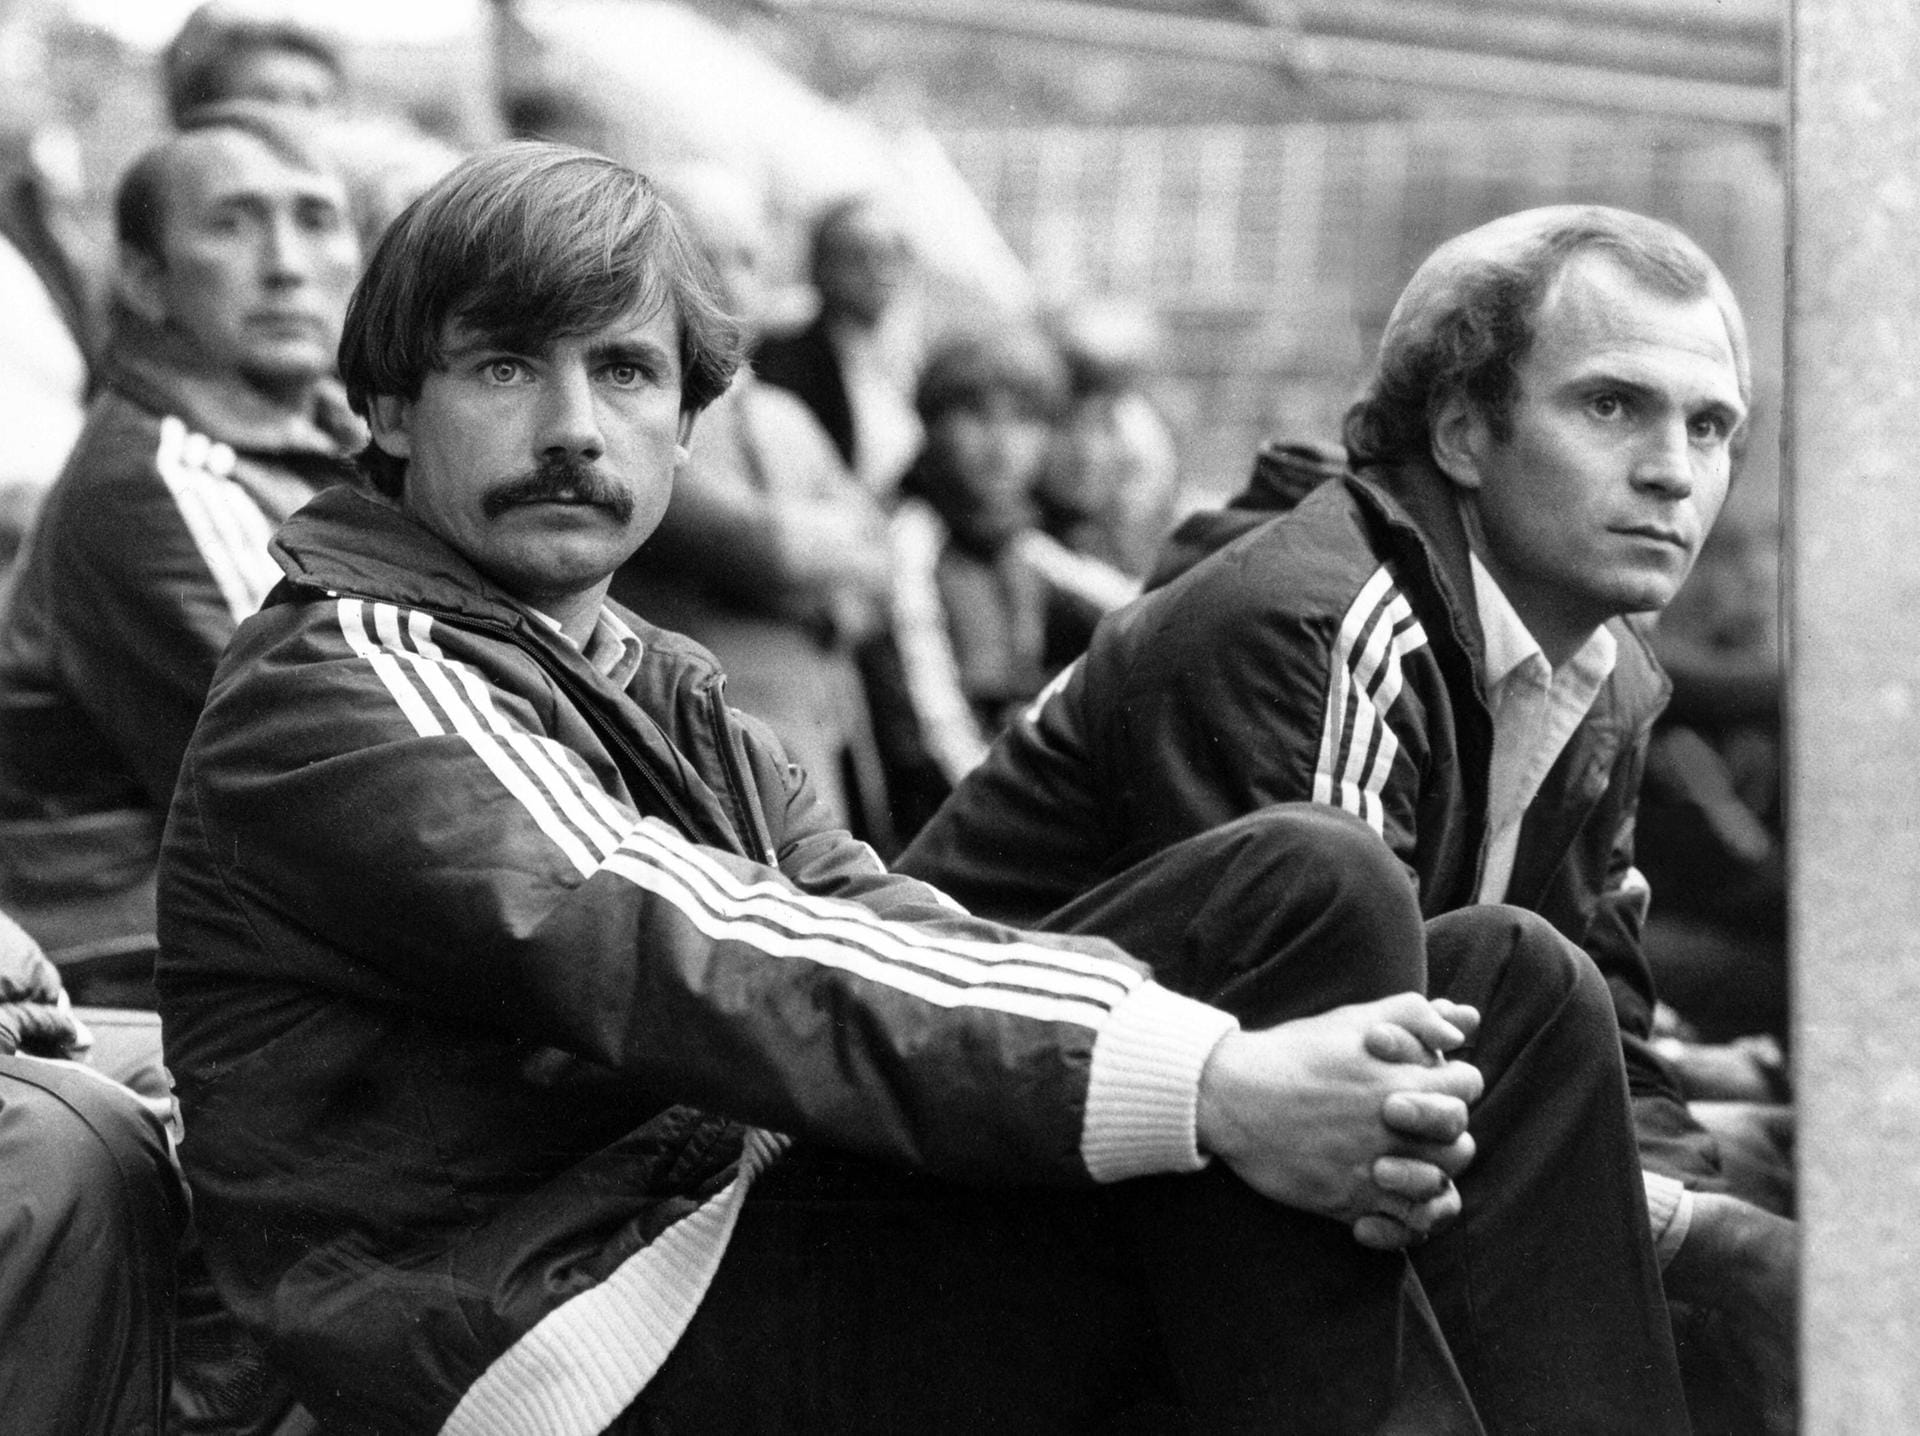 1. Reinhard Saftig (17. Mai 1983 – 30. Juni 1983): Der gebürtige Rheinländer war bereits seit 1979 Co-Trainer bei den Bayern, erst unter Pal Csernai, dann unter Udo Lattek. Als Csernai kurz vor Saisonende 1982/83 gehen musste, übernahm Saftig für die letzten drei Ligaspiele als Interimstrainer – mit nur 31 Jahren.